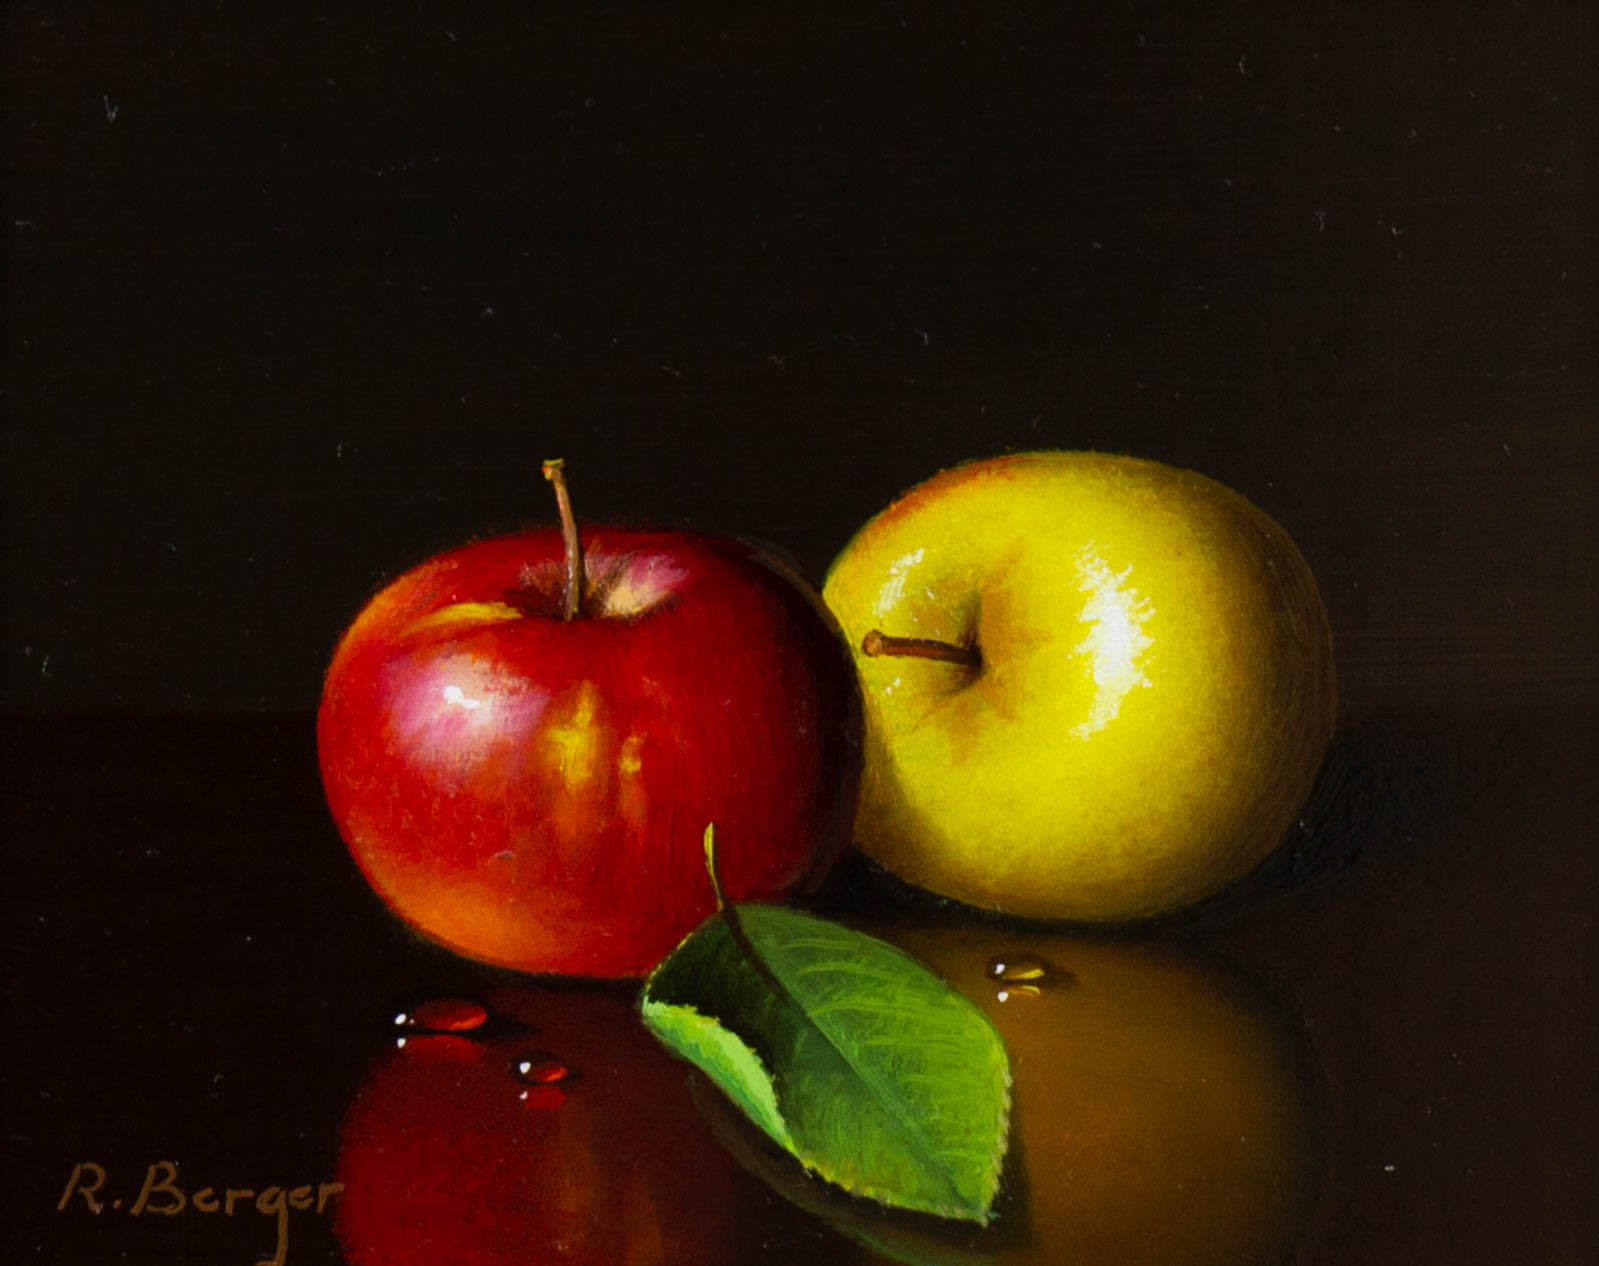 Pair Of Apples